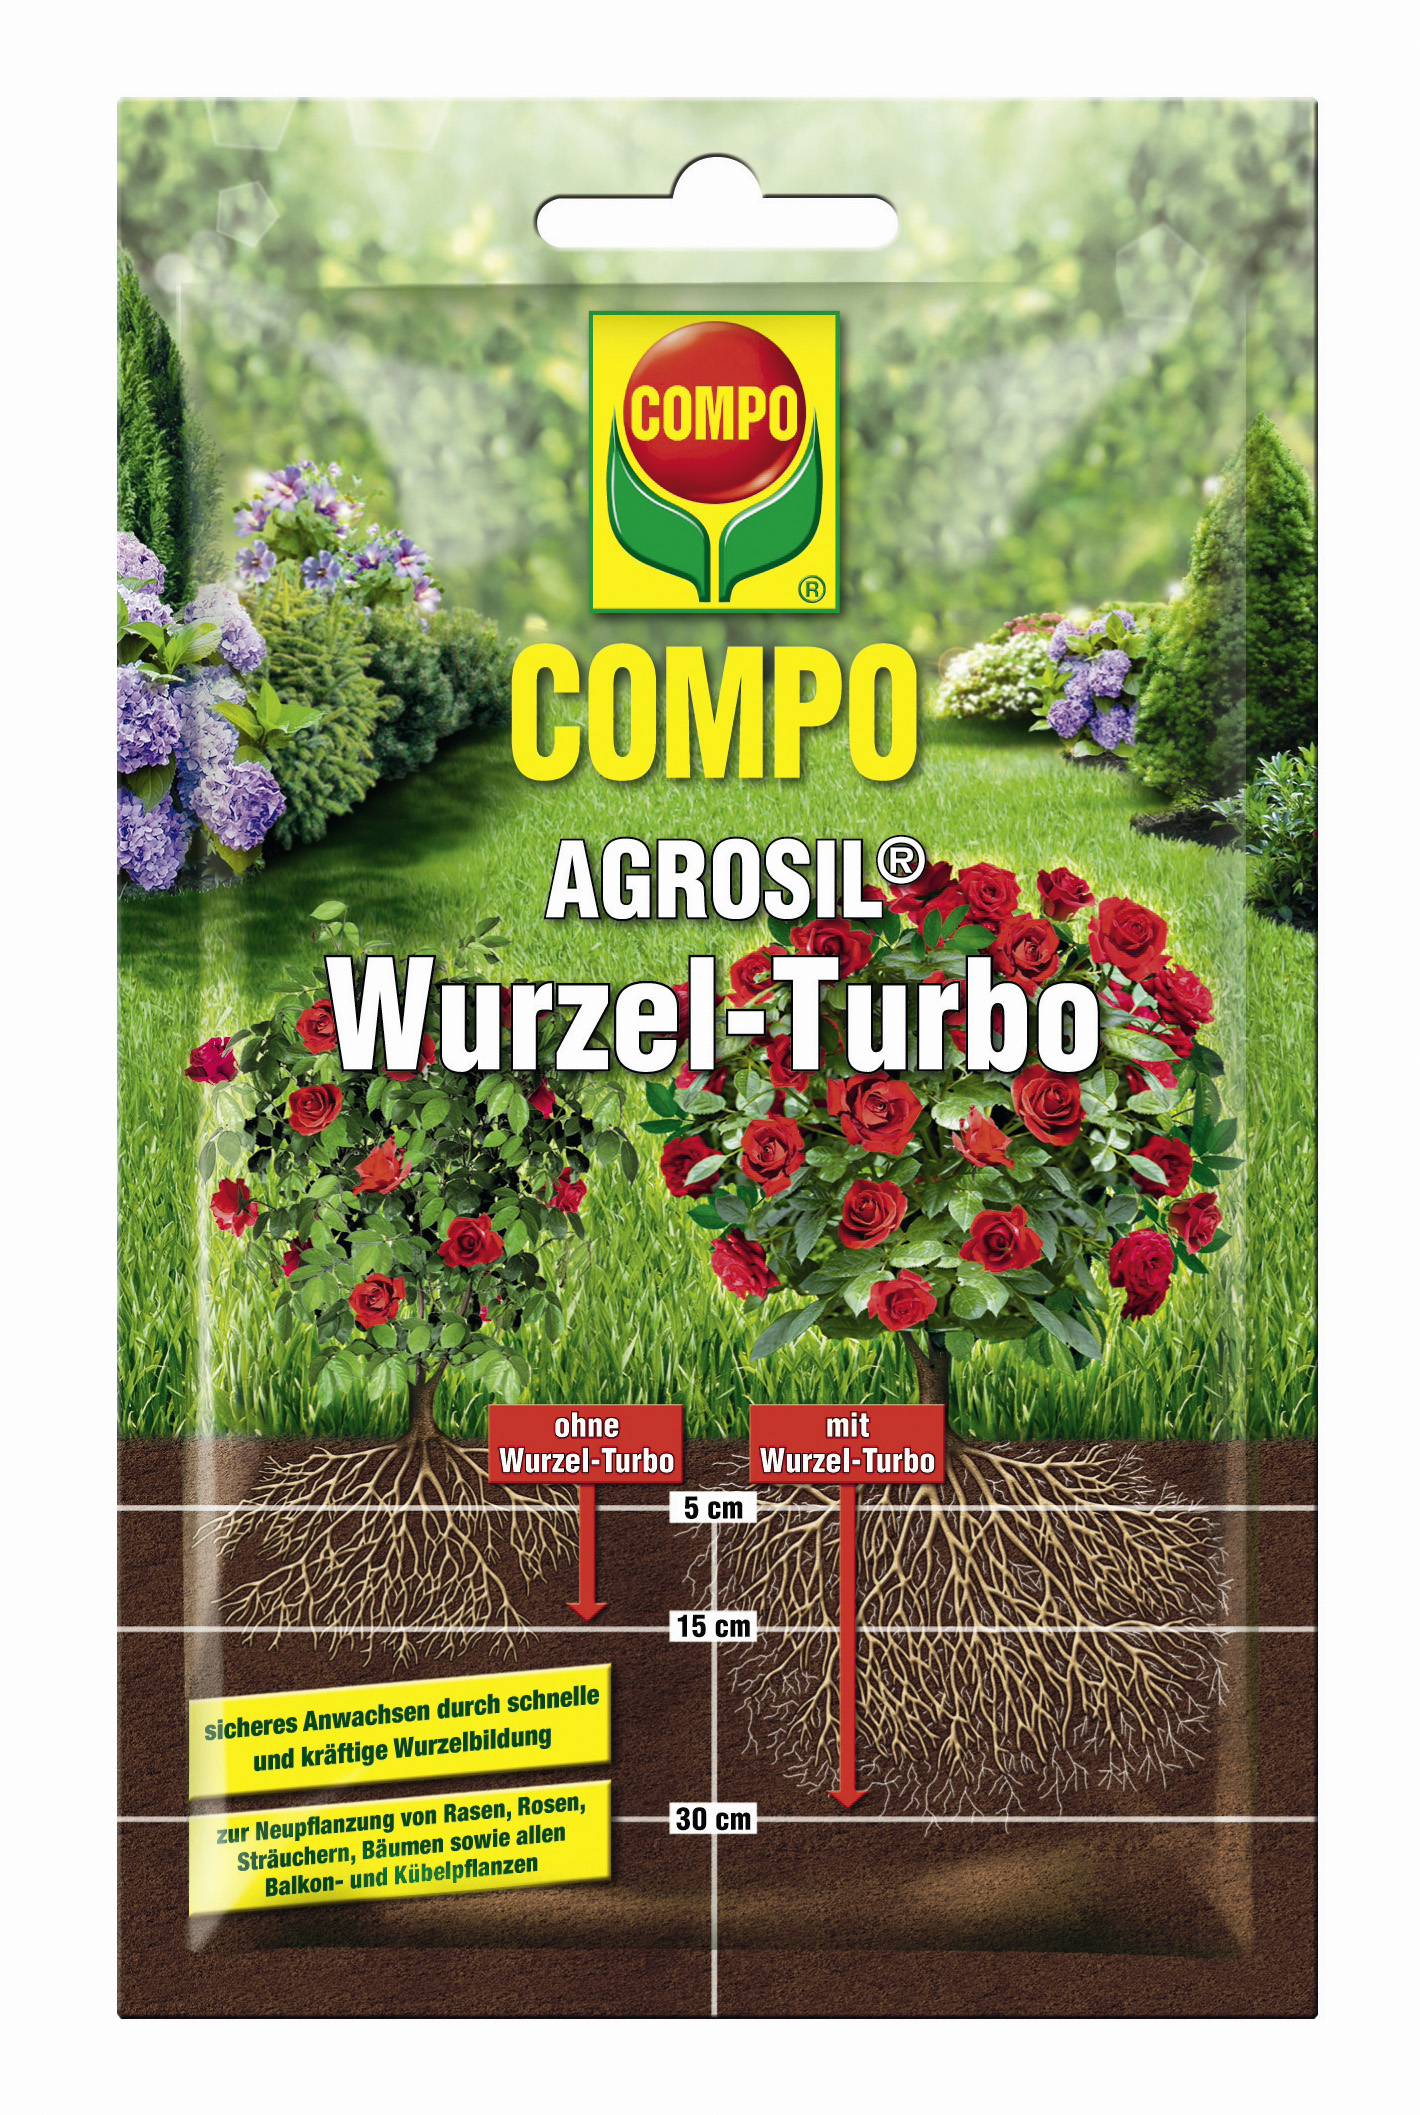 COMPO AGROSIL® Wurzel-Turbo